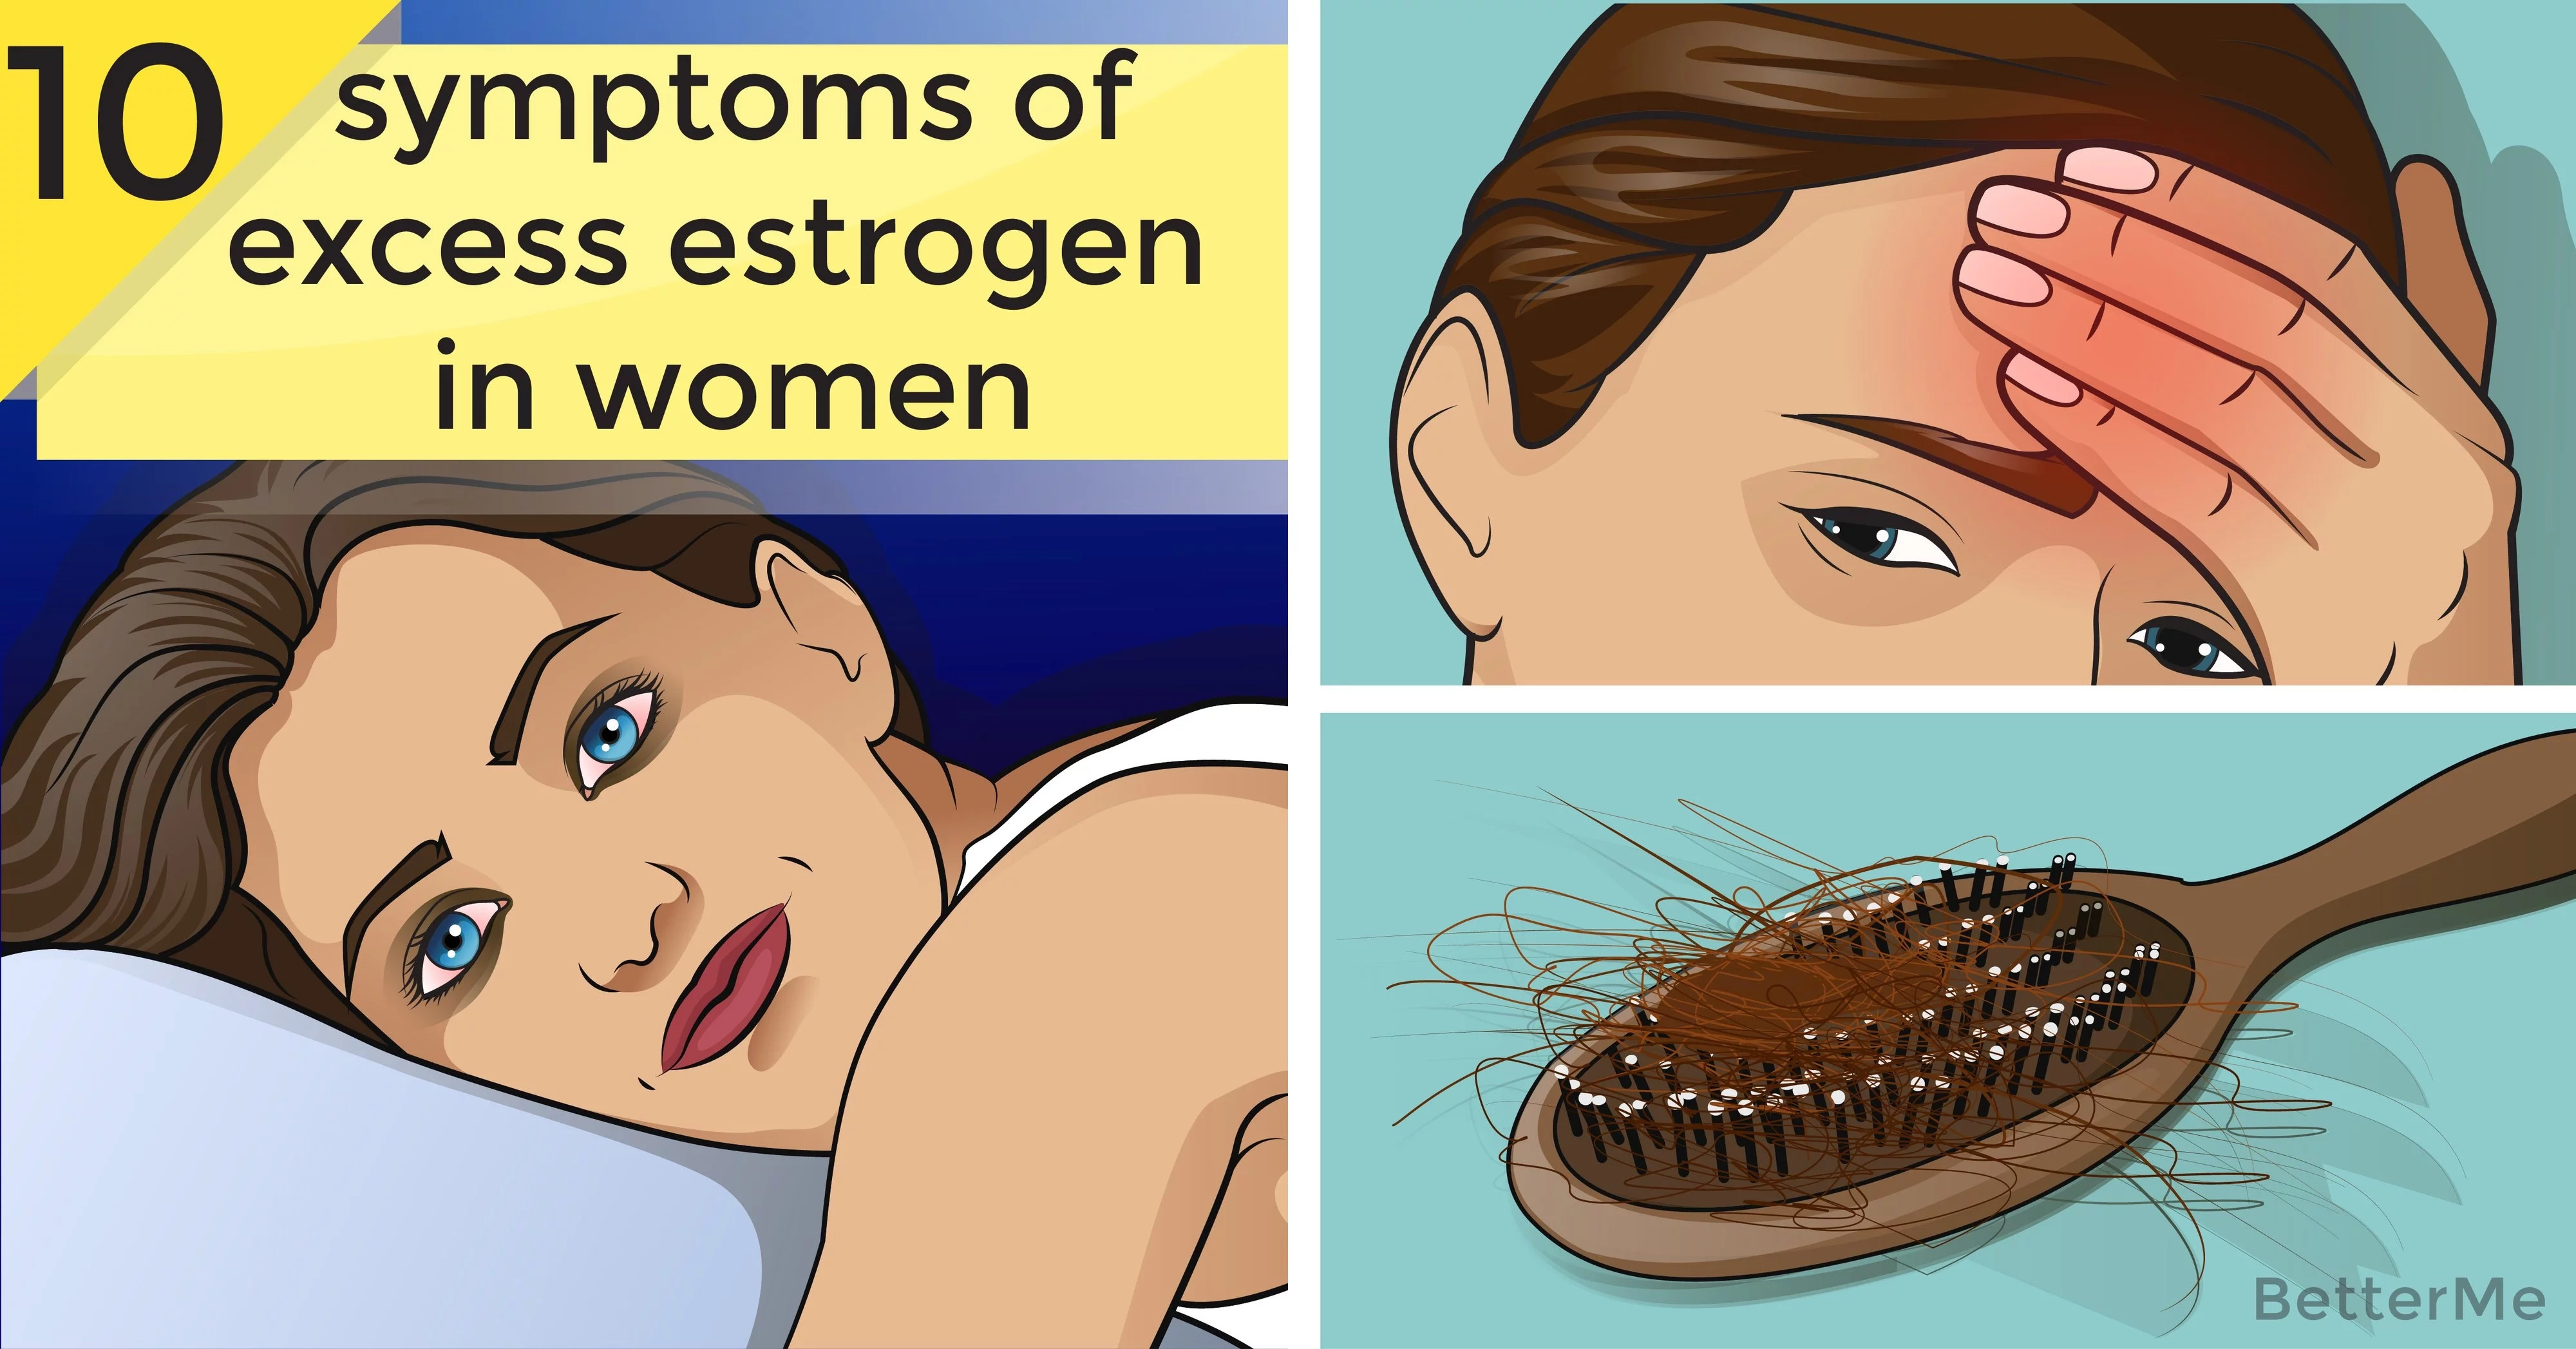 Top 10 symptoms of excess estrogen in women